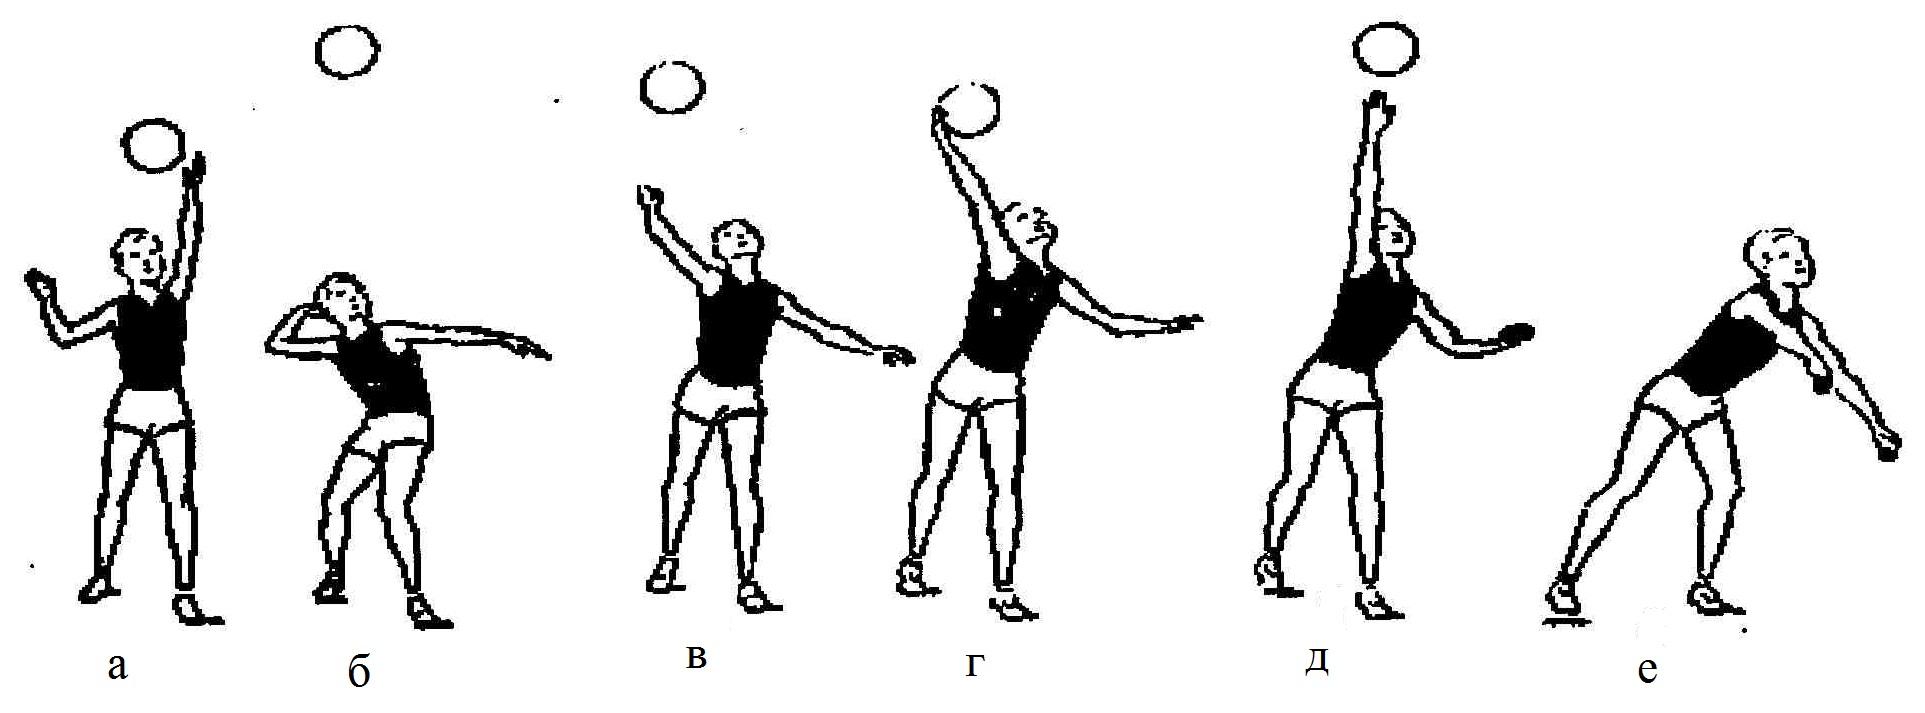 Упражнения для подачи в волейболе. Упражнения с набивным мячом для волейбола. Упражнения для верхней подачи мяча в волейболе. Подводящие упражнения в волейболе для верхней подачи. Верхней прямой подаче упражнения.